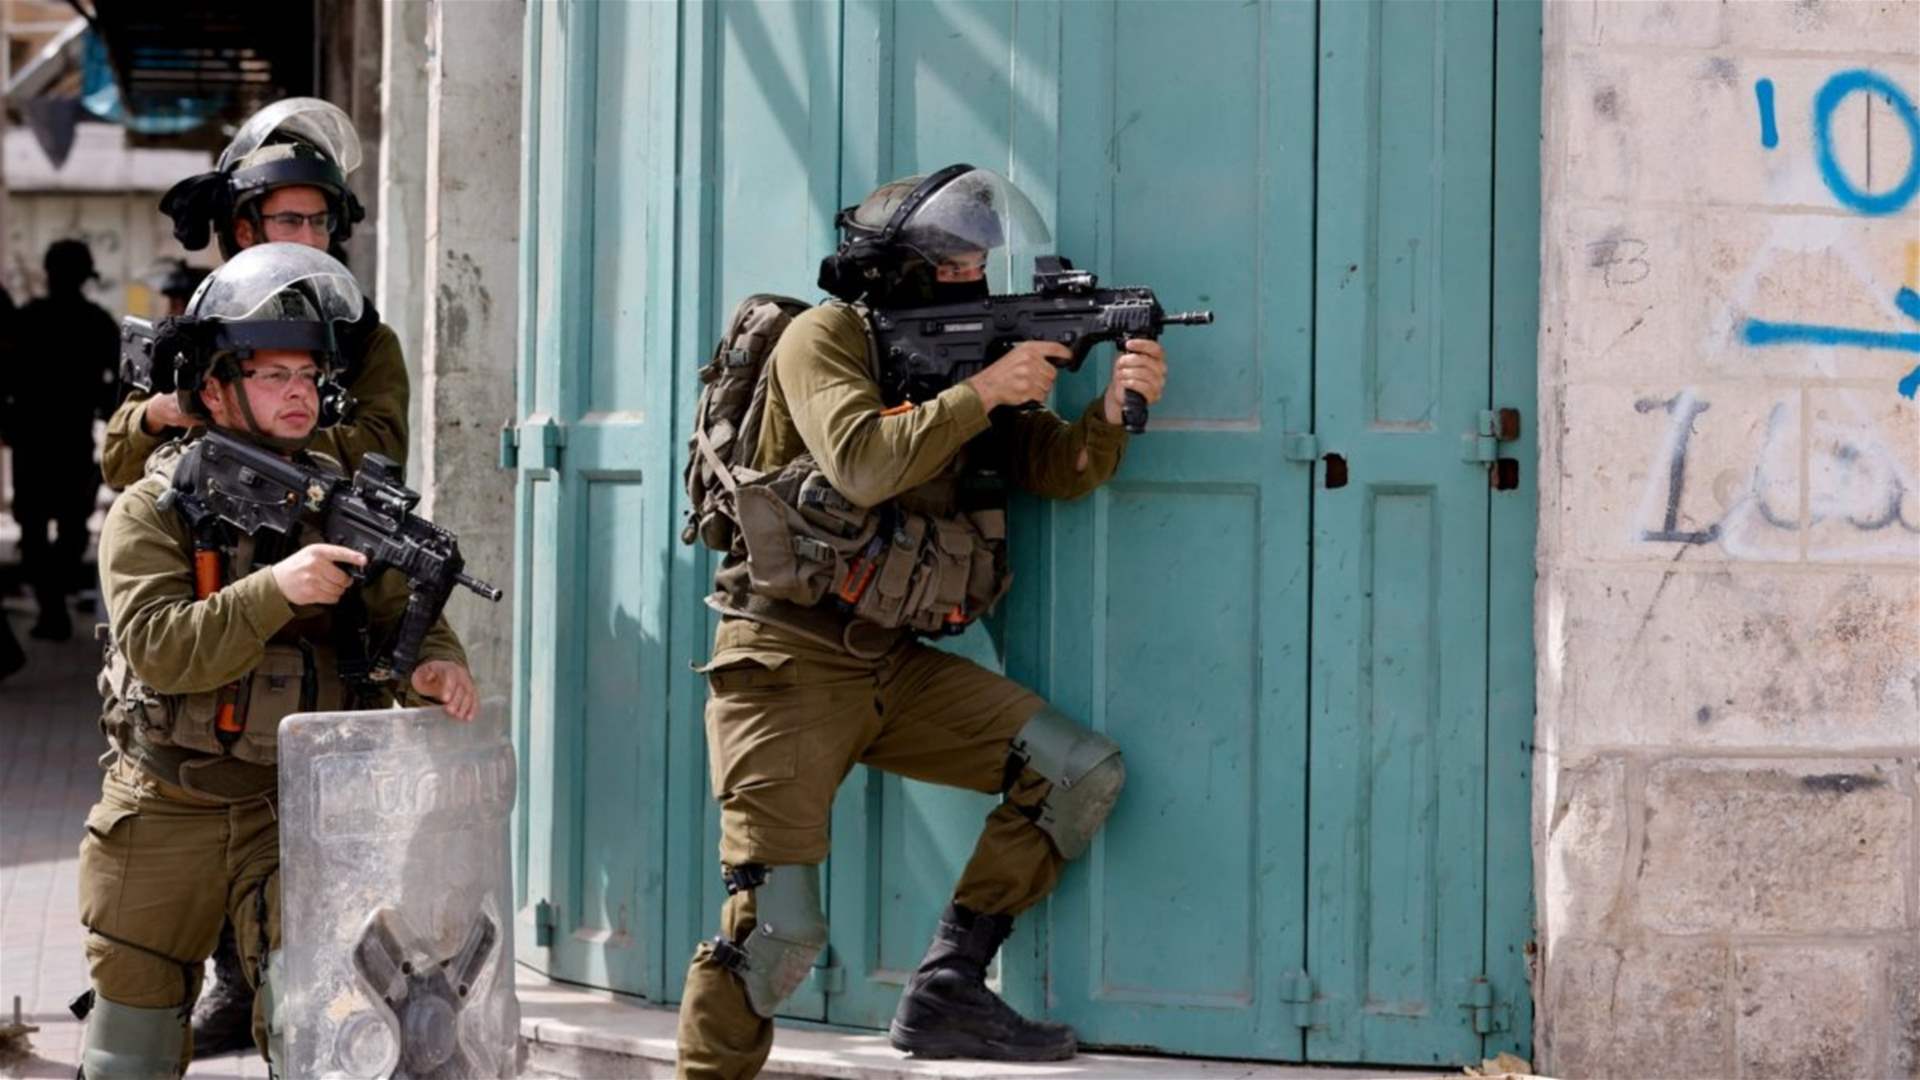 مقتل ثلاثة فلسطينيين مسلحين بالقرب من نابلس في الضفة الغربية المحتلة